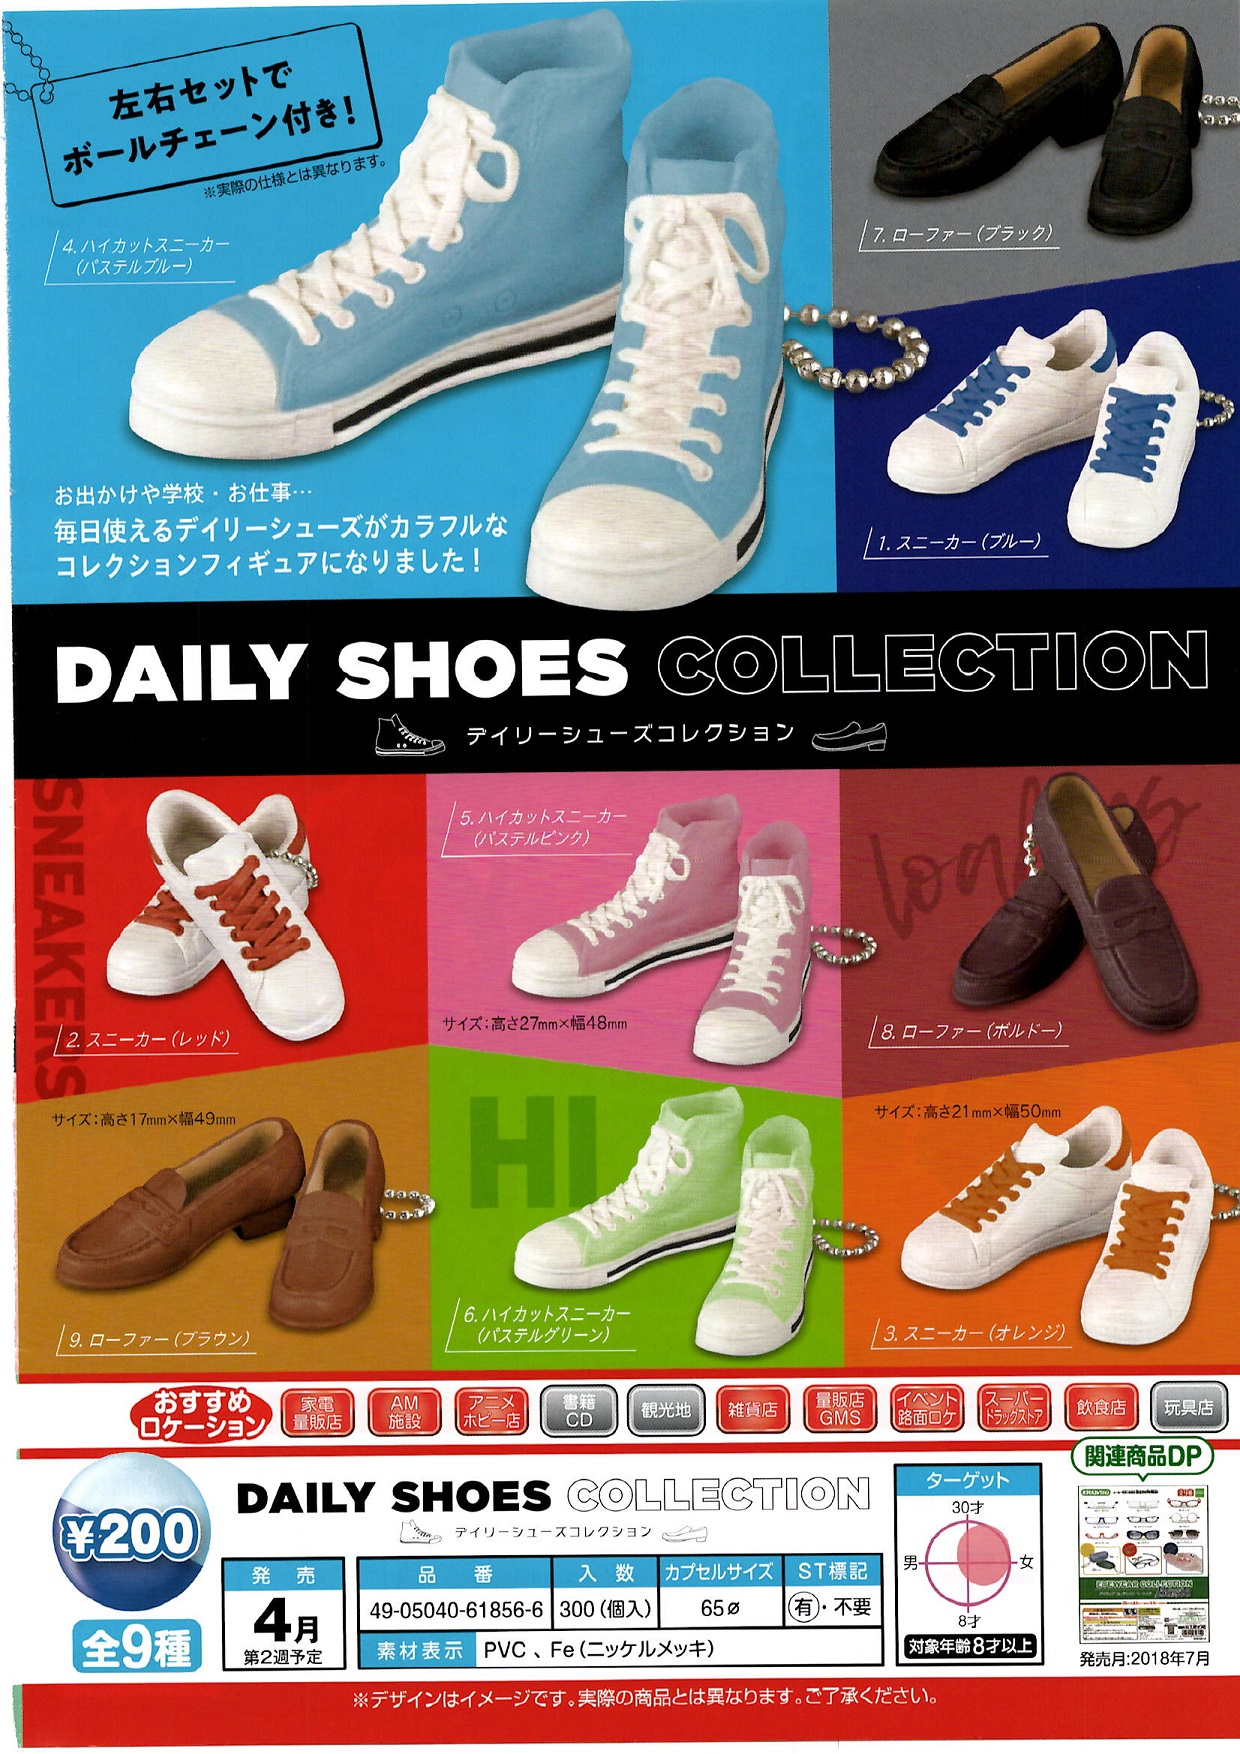 200日元扭蛋 仿真常用鞋挂件 全9种 (1袋50个) 618566